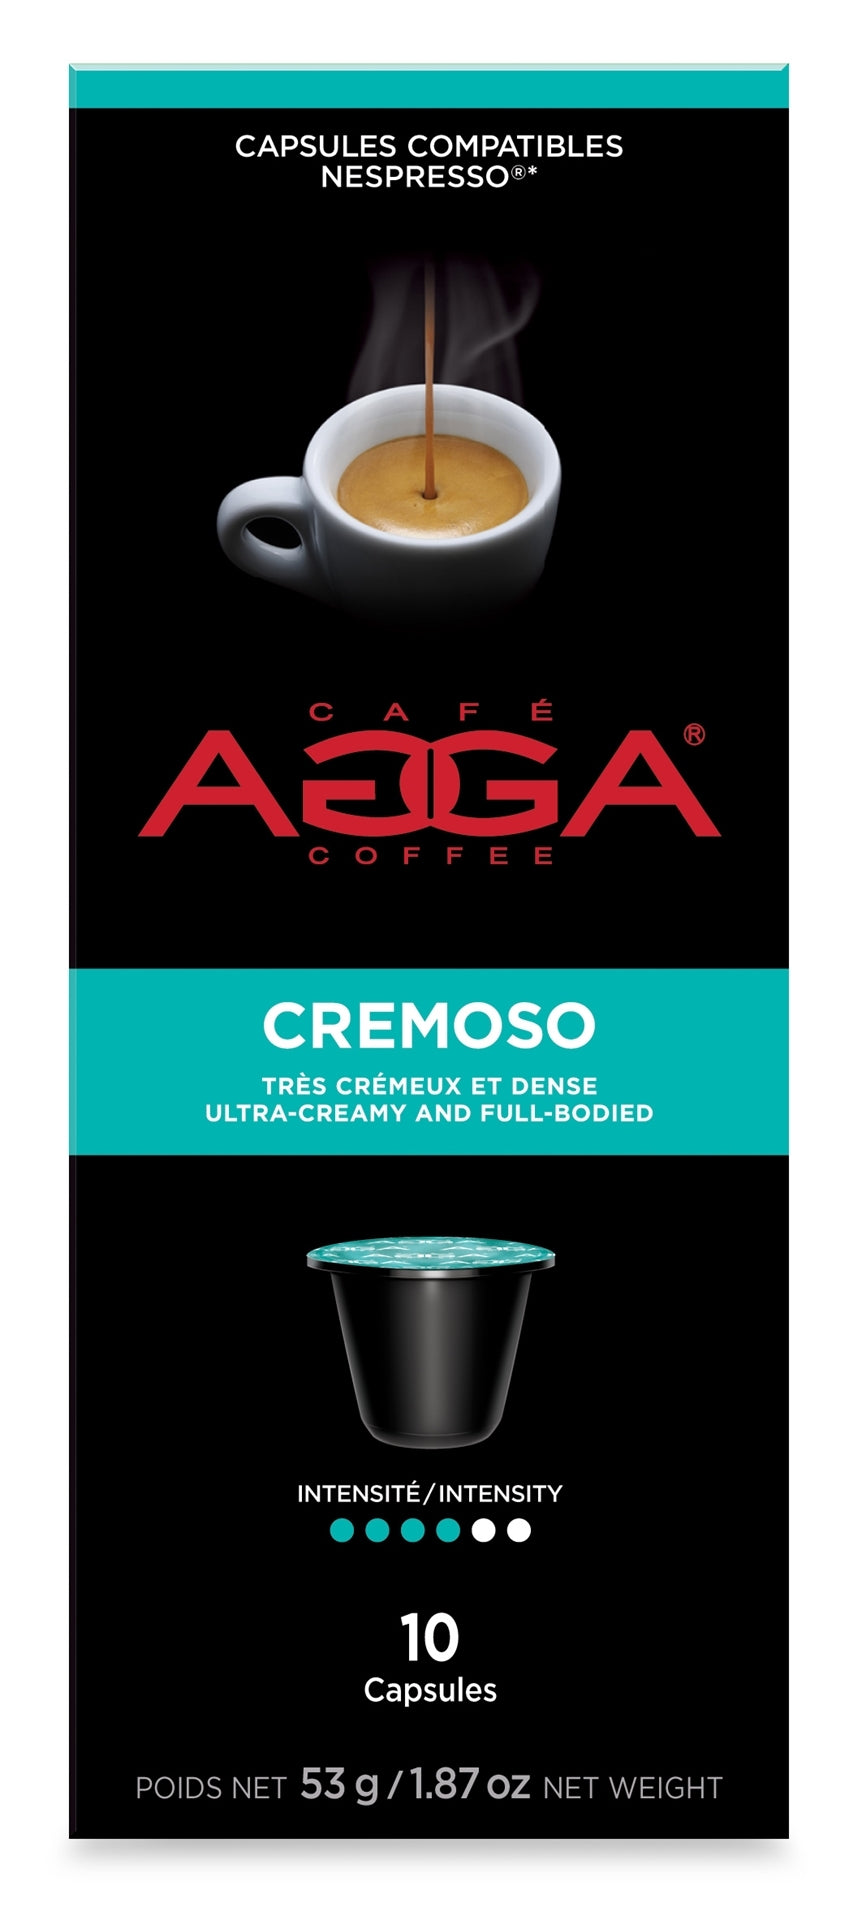 Capsule compatible nespresso